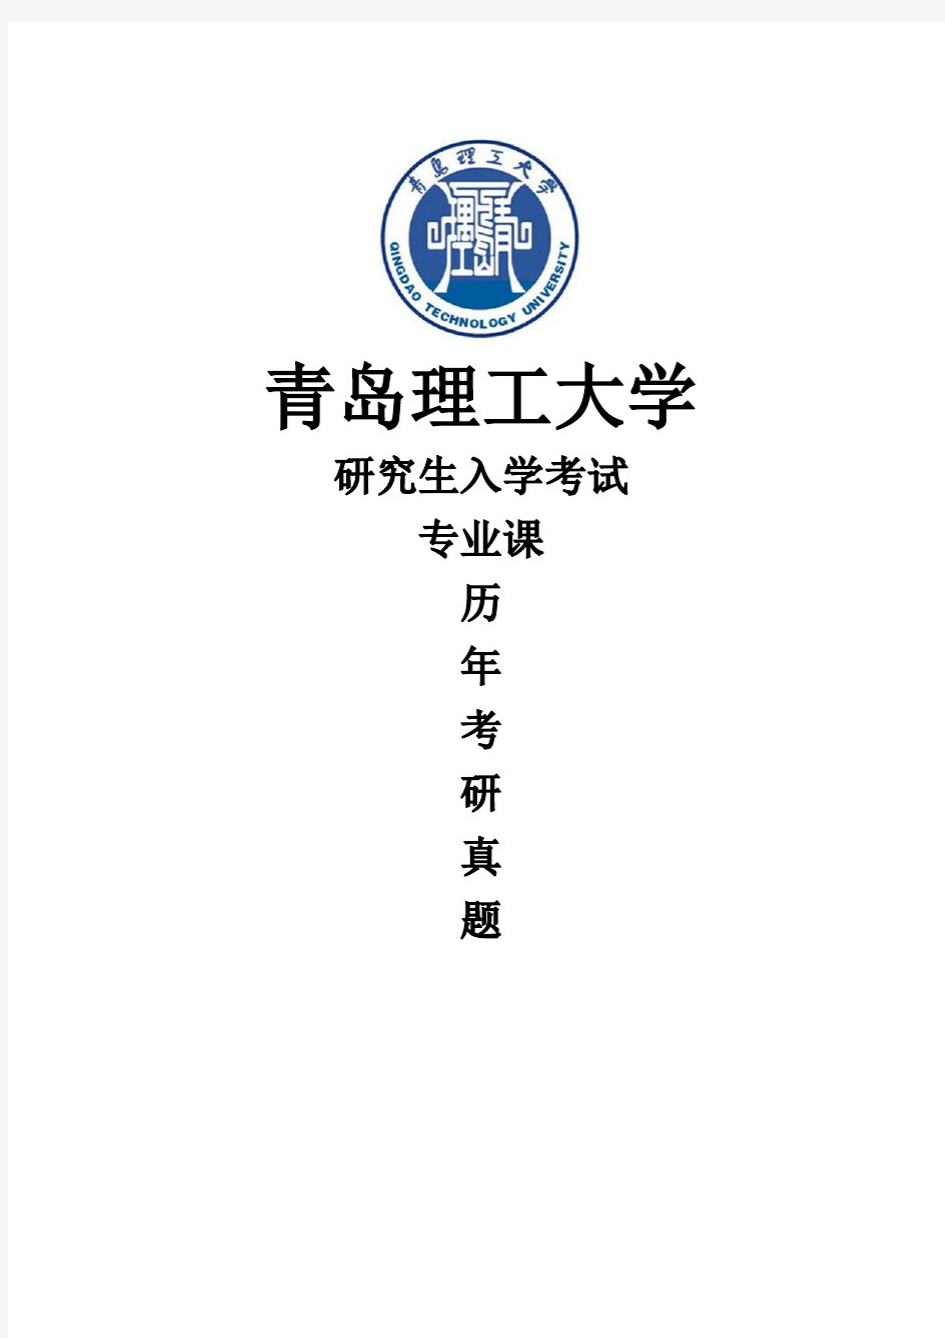 青岛理工大学《传热学》[官方]历年考研真题(2015-2020)完整版